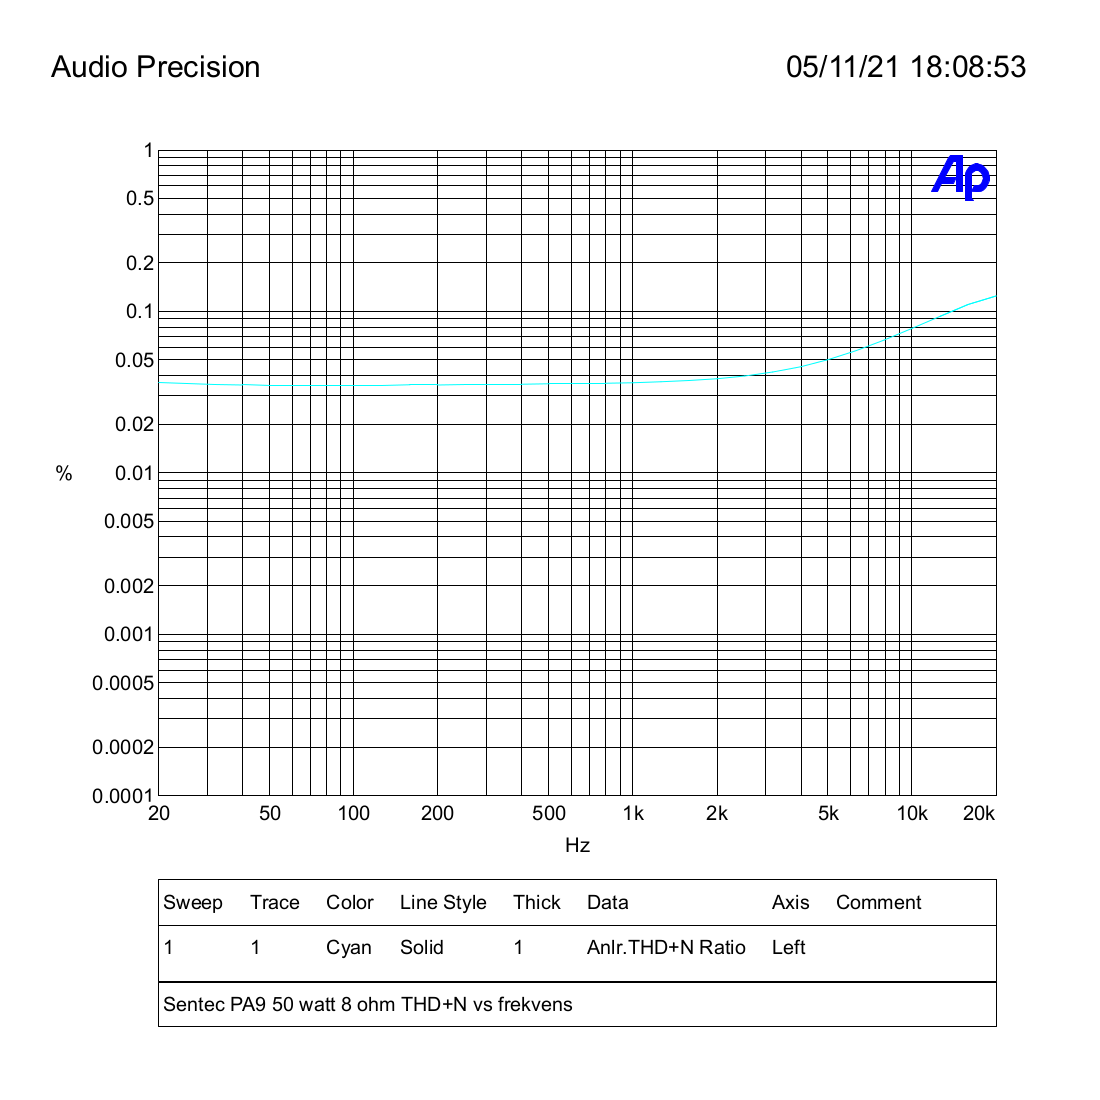 Sentec PA9 50 watt 8 ohm THD+N vs frekvens.png